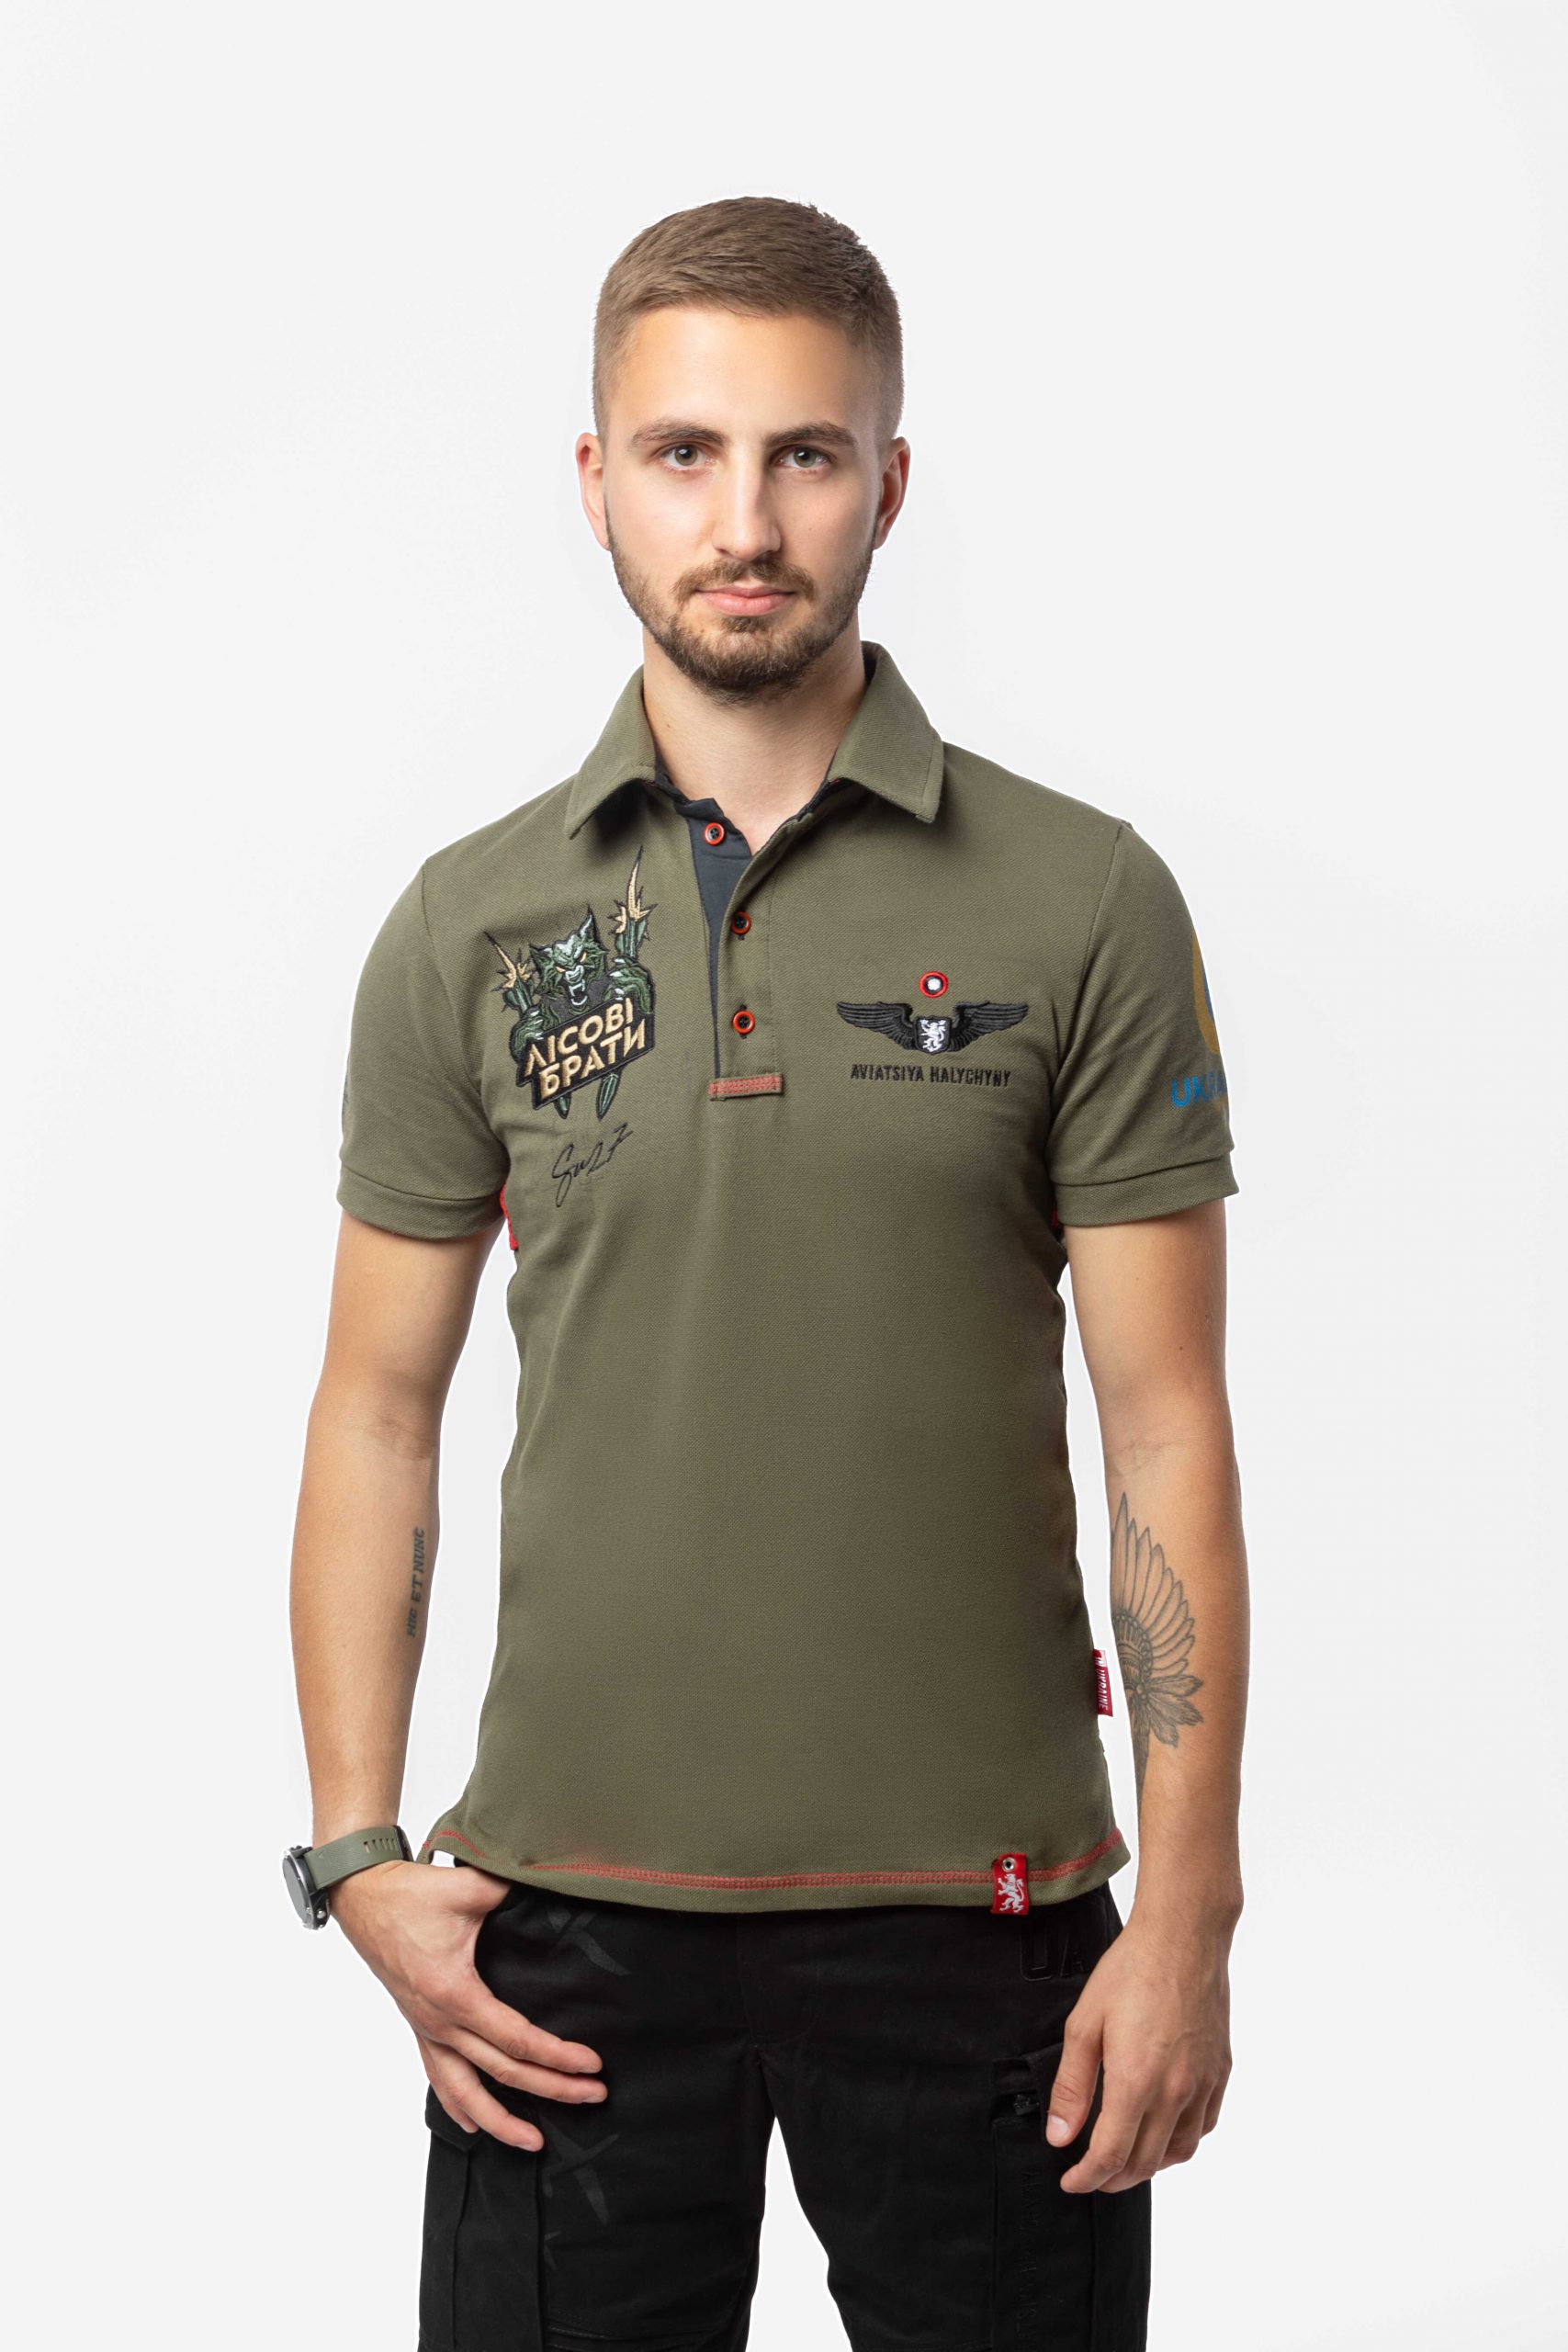 Men's Polo Shirt 39 Brigade. Color khaki. .